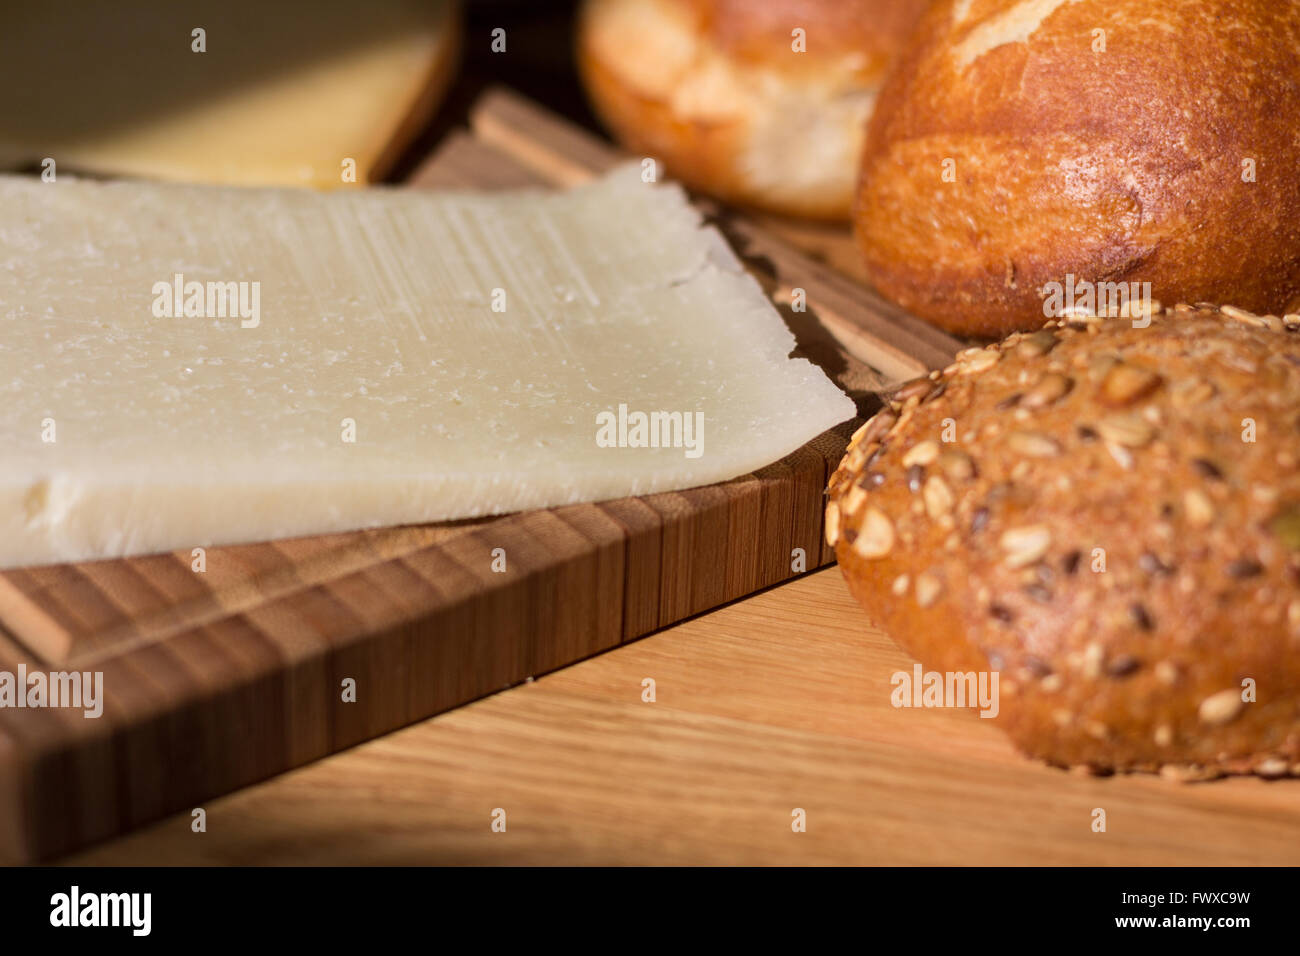 Pane e formaggio macro di legno sul tavolo per la colazione Foto Stock